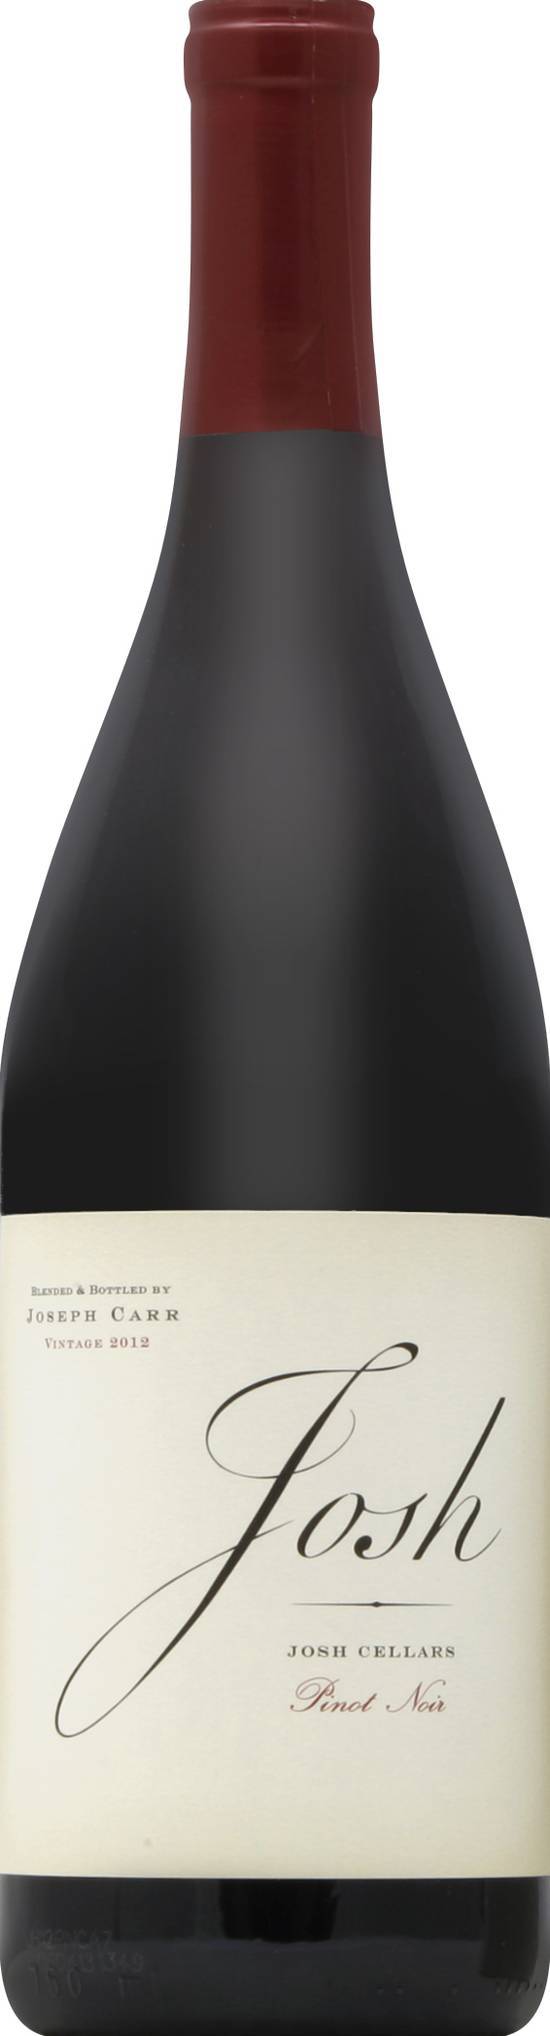 Josh Cellars Pinot Noir Red Wine 2012 (750 ml)